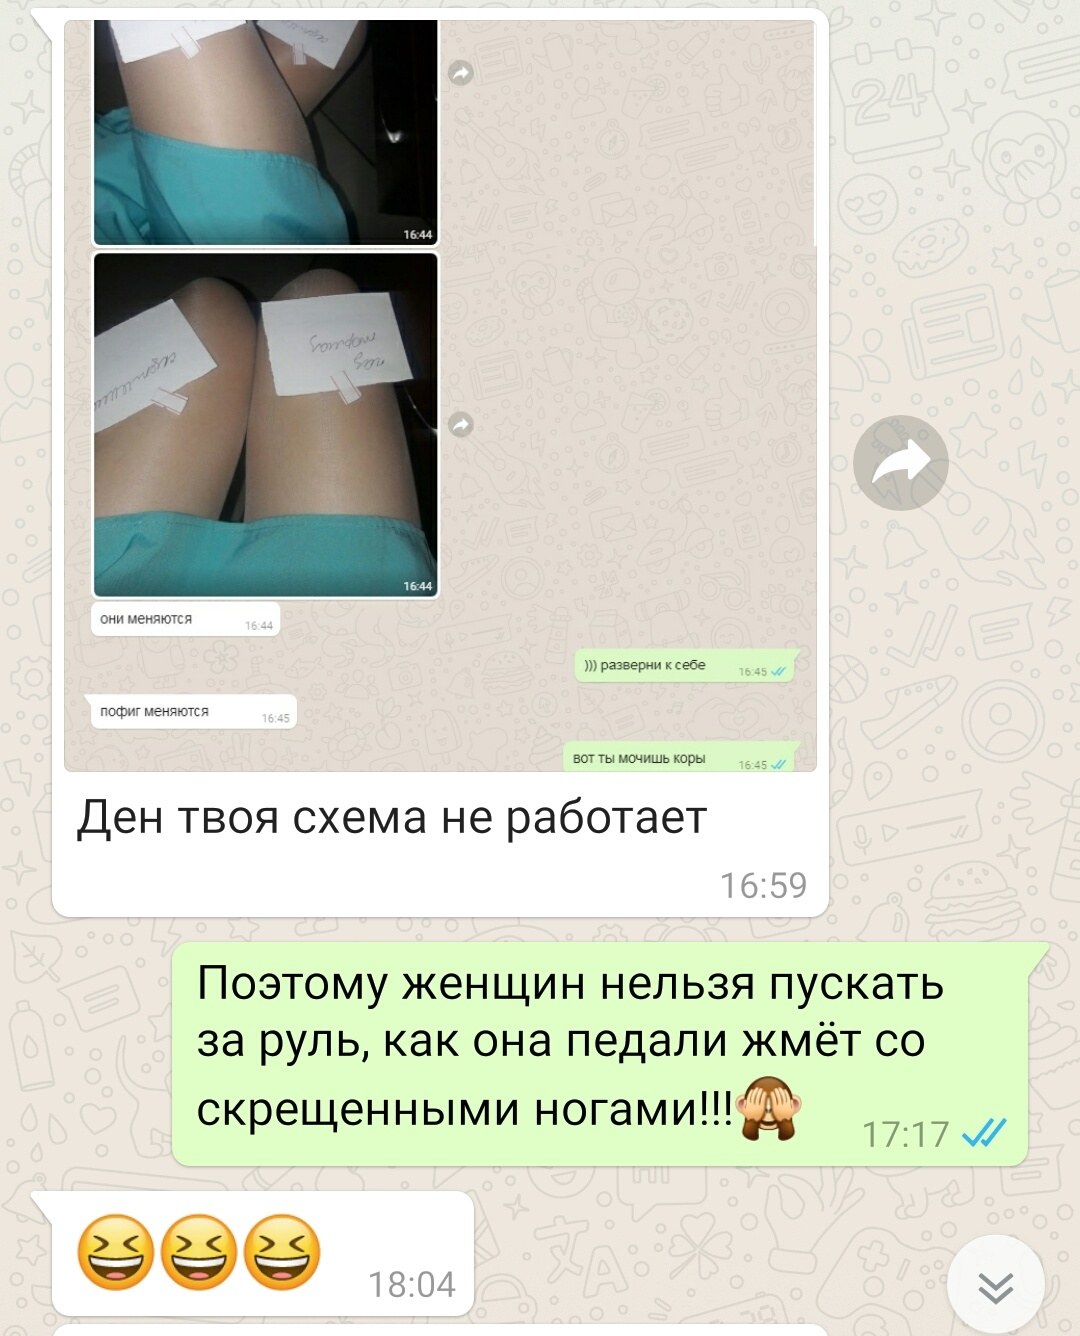 Обмен интим фото, вирт whatsapp — объявление № на lys-cosmetics.ru от 10 Июня 